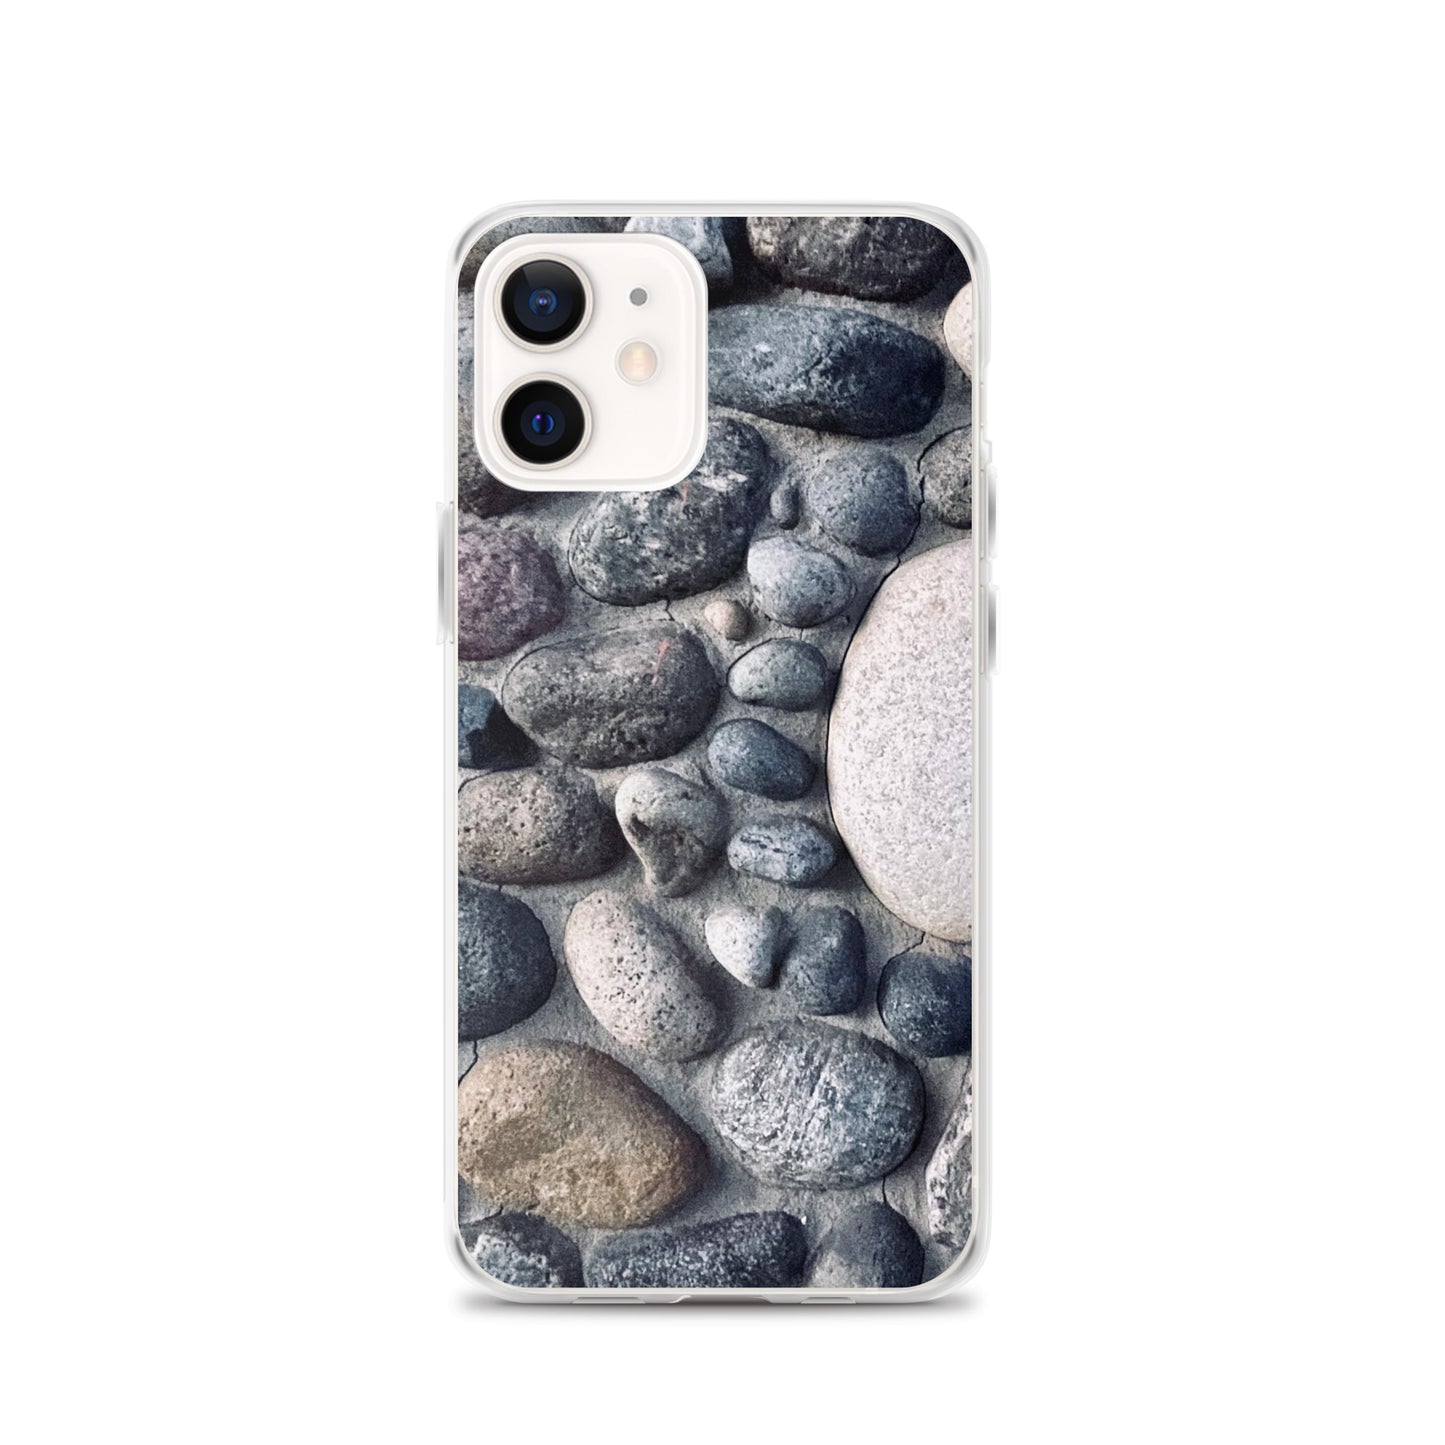 Rock n Rocks n More Rocks (iPhone Case) - Comfortable Culture - iPhone 12 - Mobile Phone Cases - Comfortable Culture